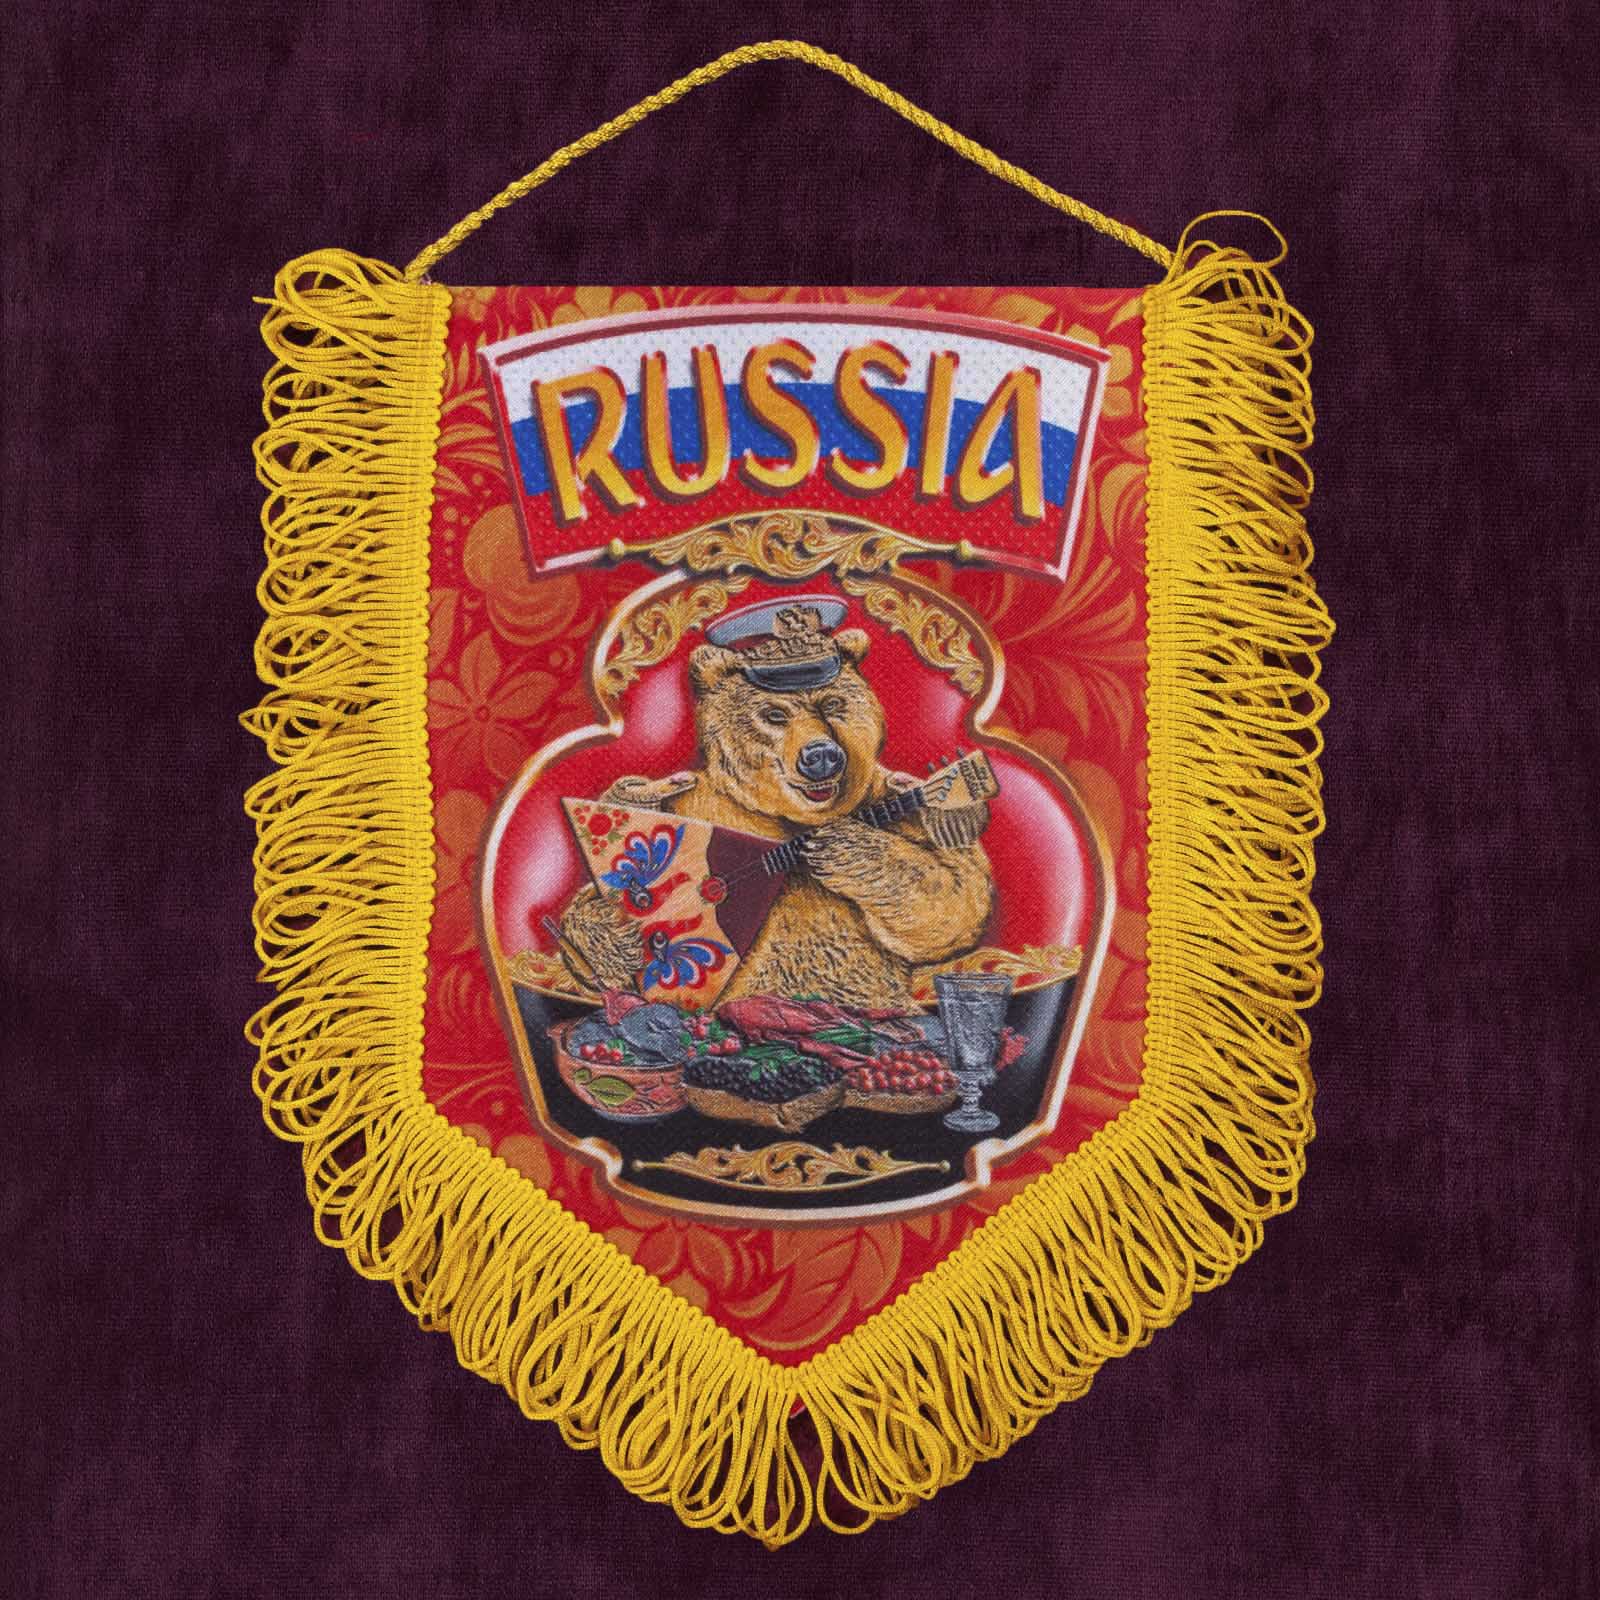 Купить сувенирный вымпел "Russia" по выгодной цене